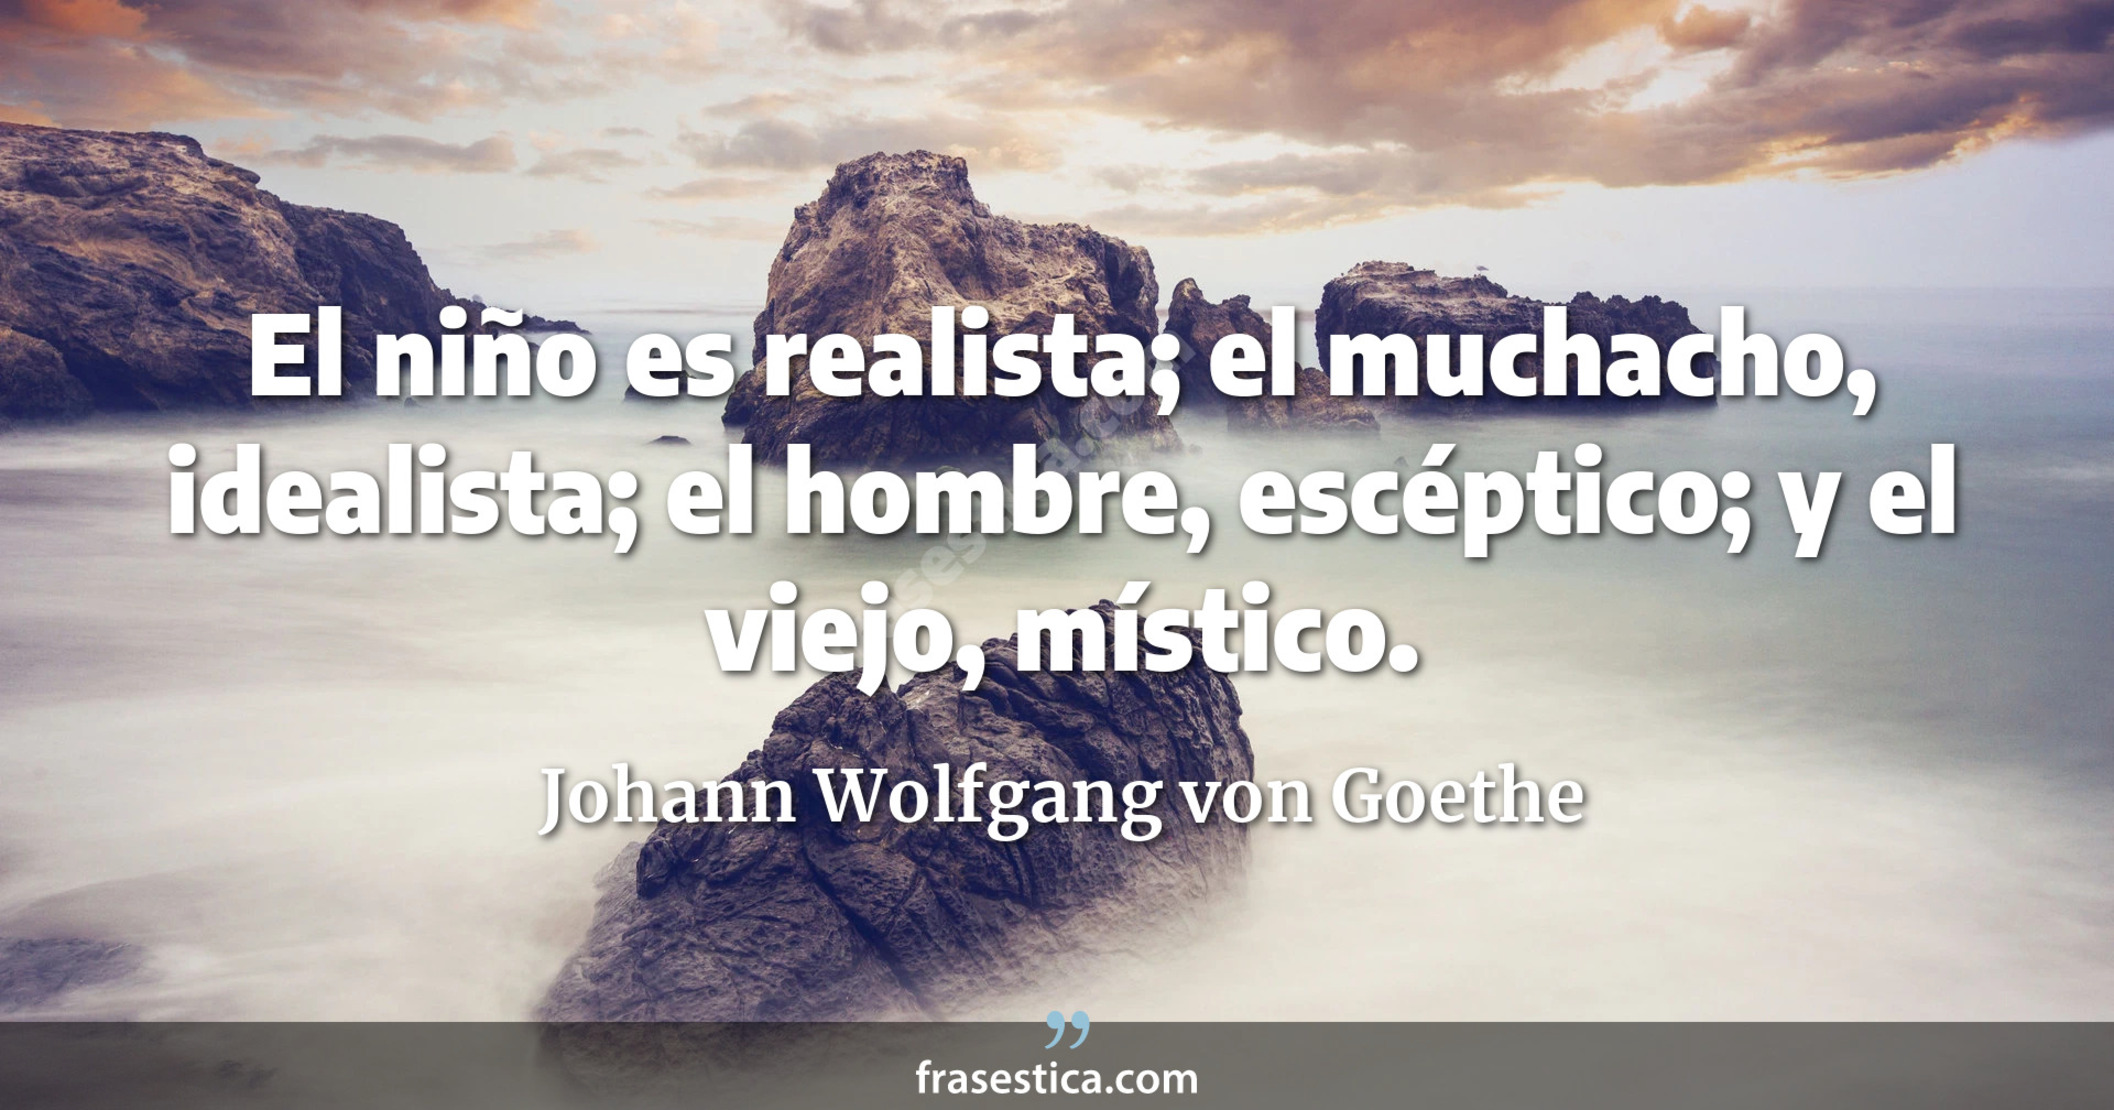 El niño es realista; el muchacho, idealista; el hombre, escéptico; y el viejo, místico. - Johann Wolfgang von Goethe